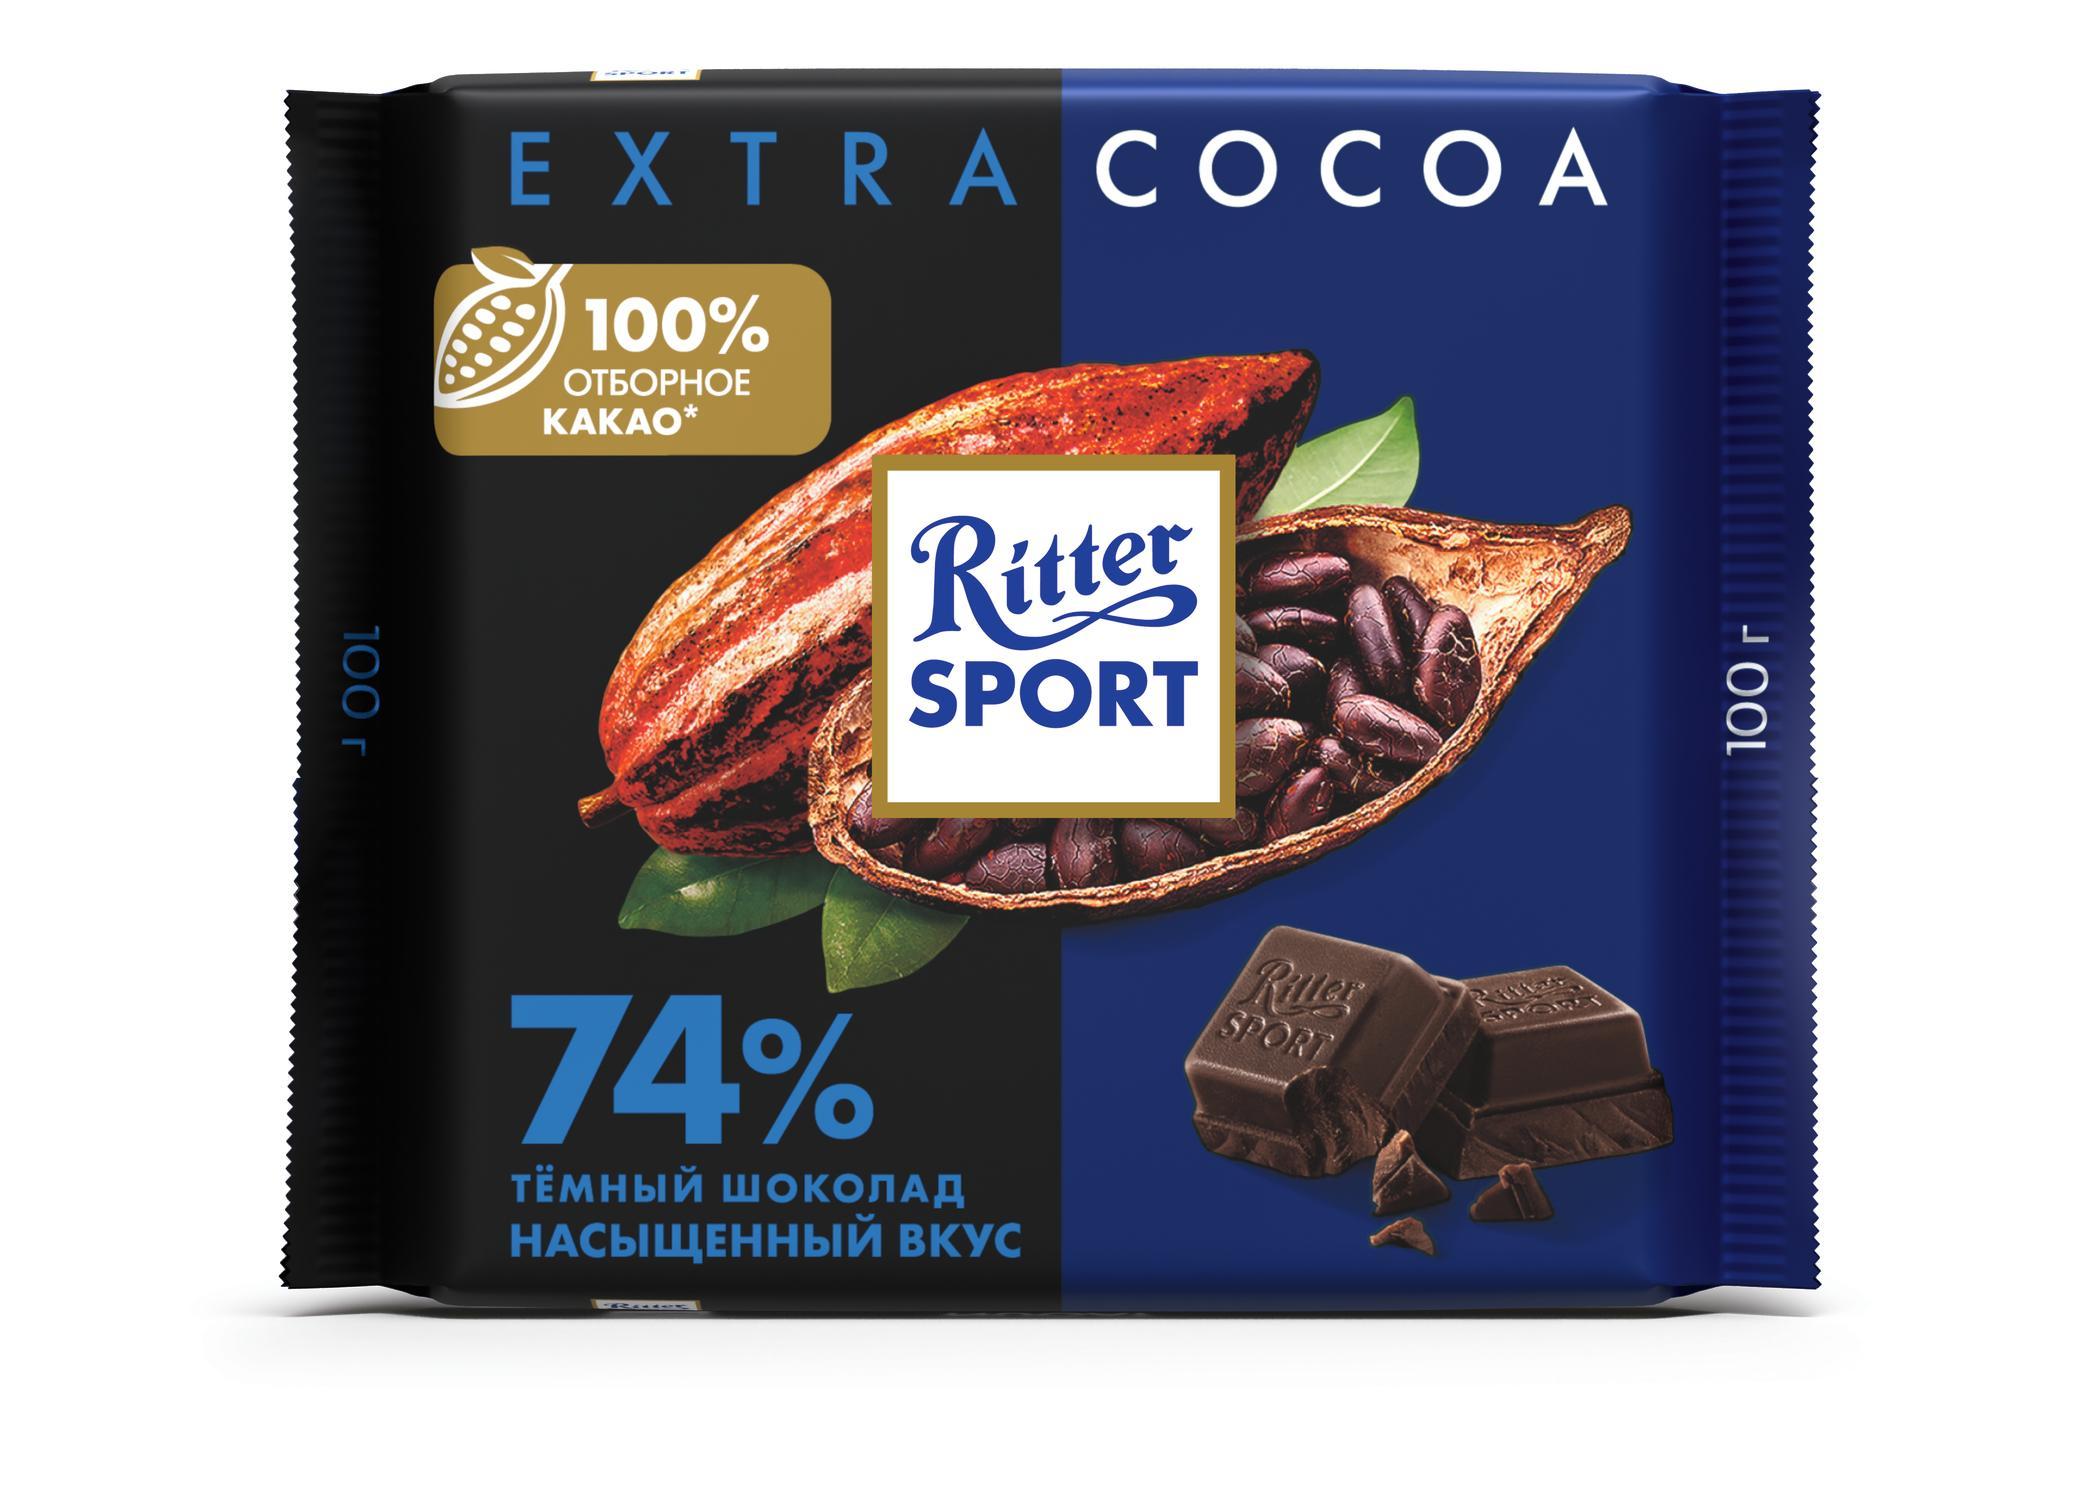 Шоколад 74% какао тёмный с утончённым вкусом из Перу, , Ritter Sport, 100 гр., флоу-пак, 12 шт.